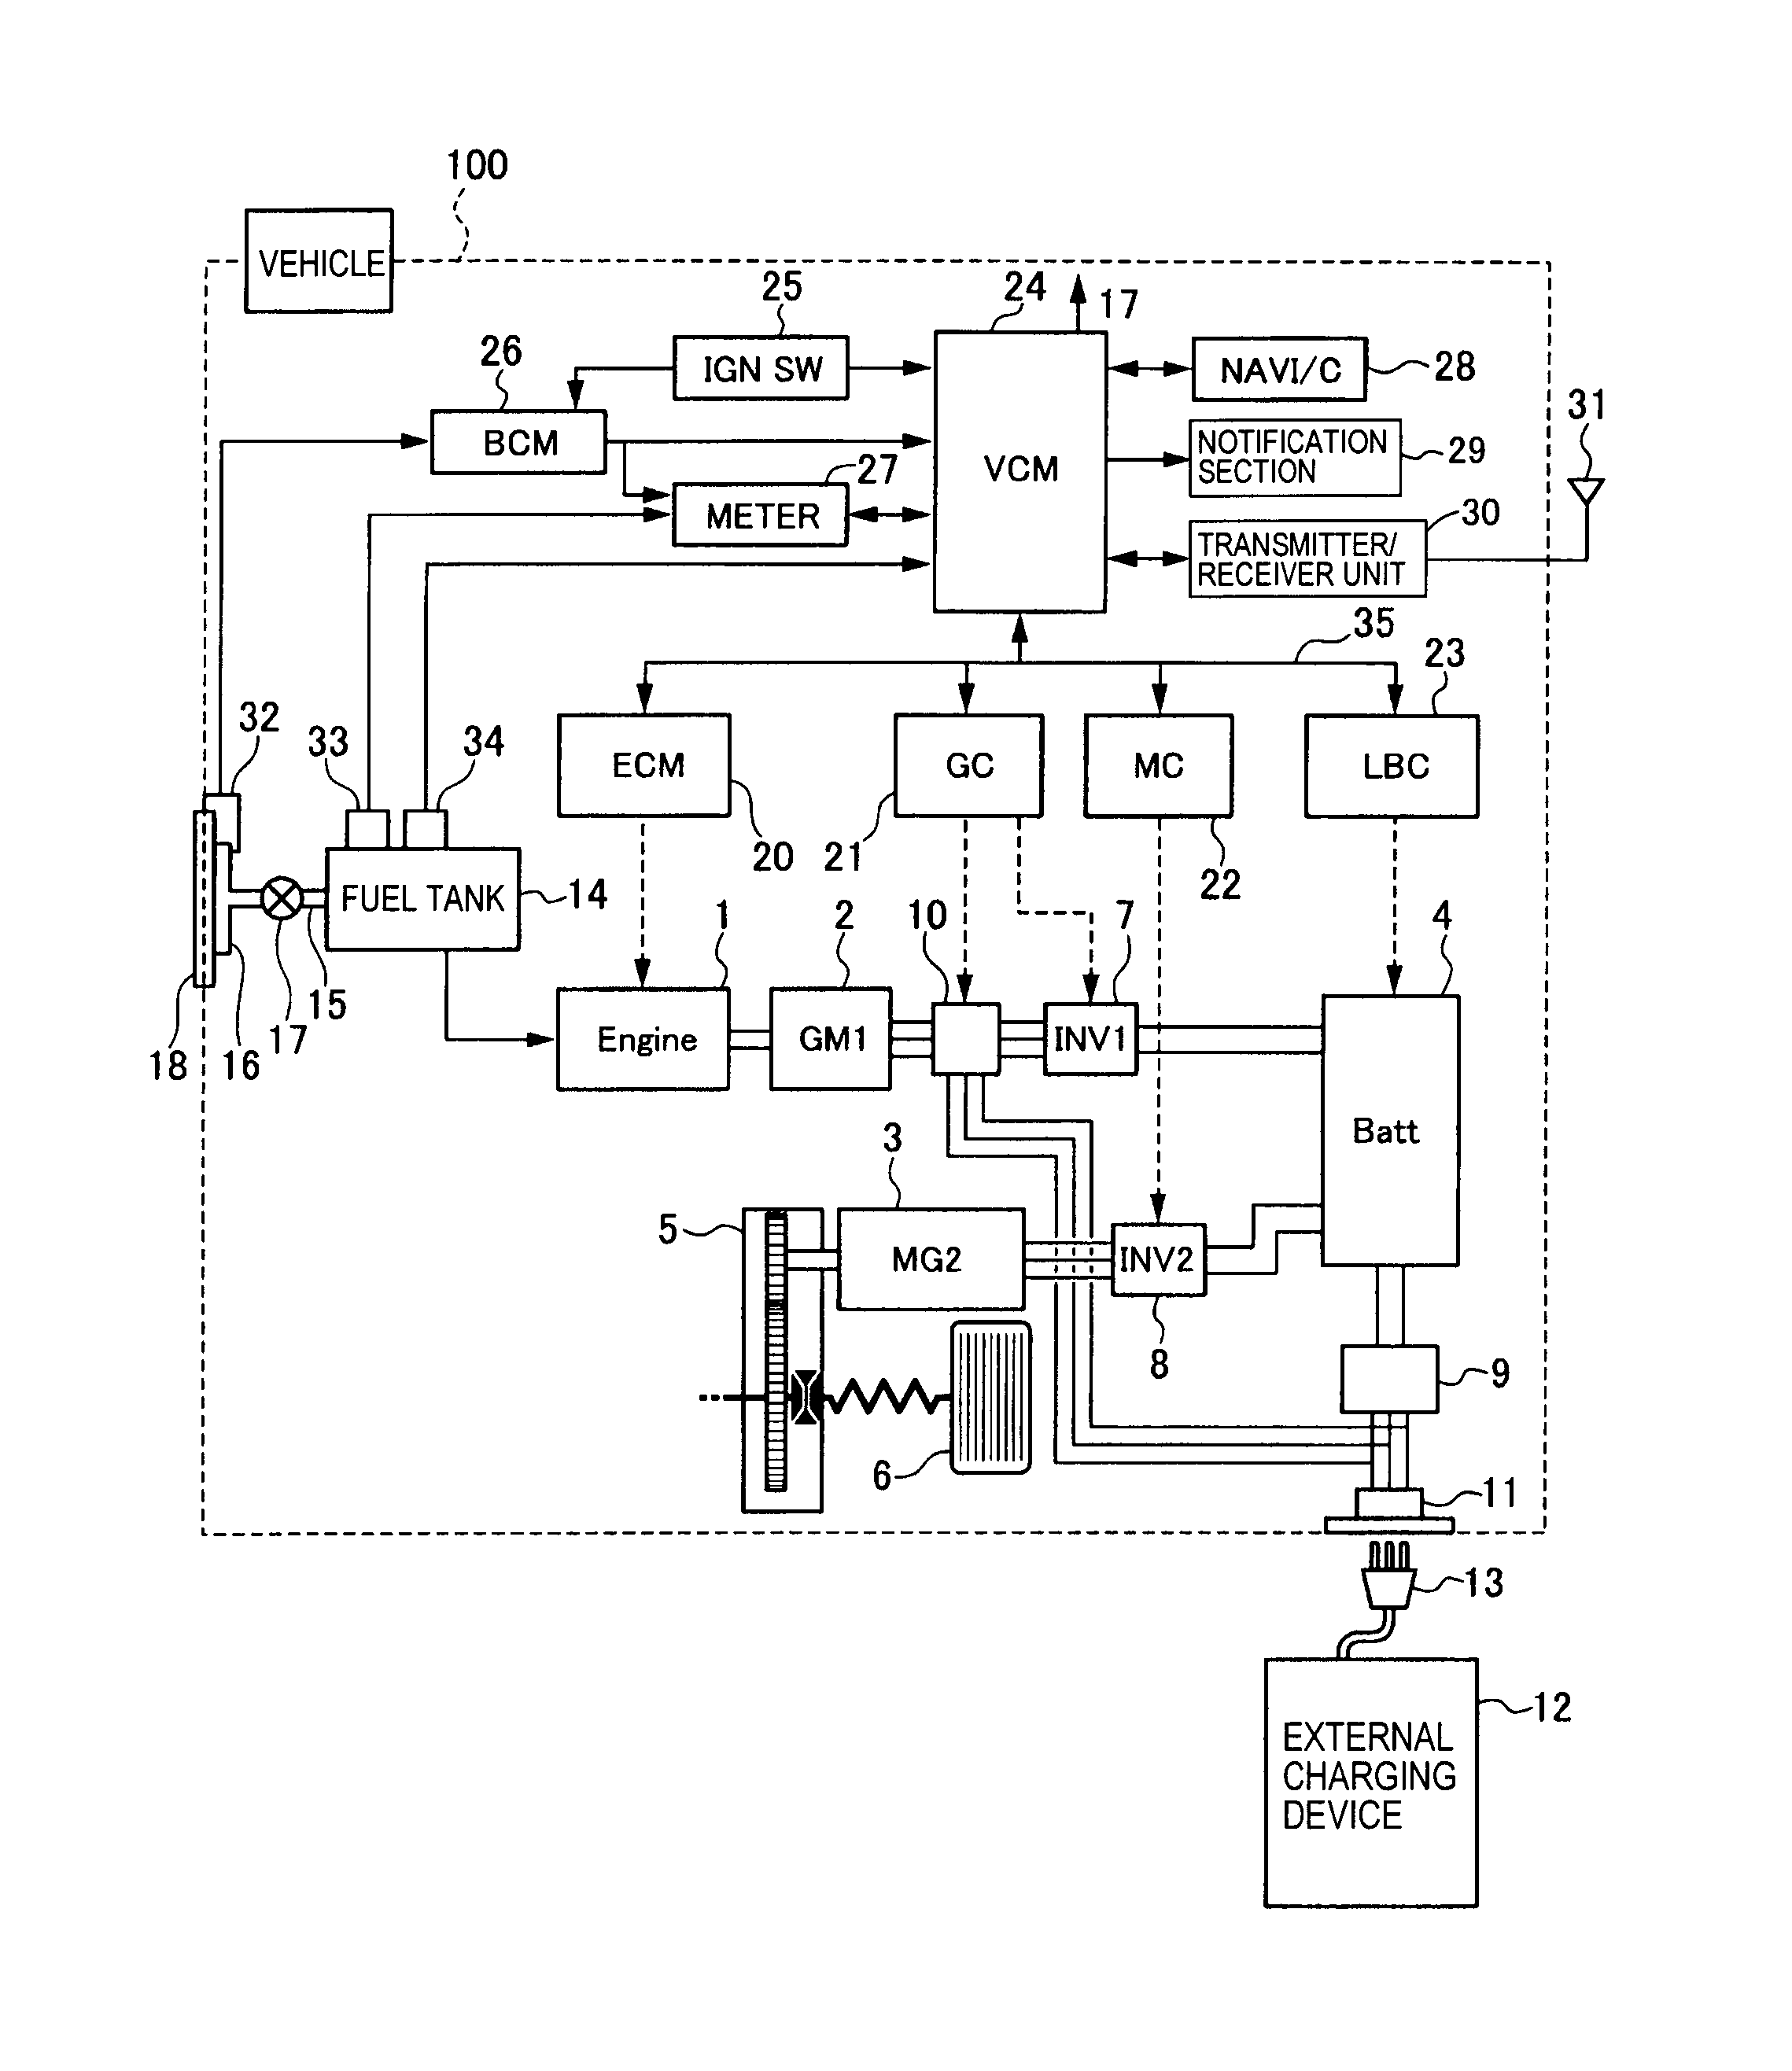 schwinn s350 wiring diagram